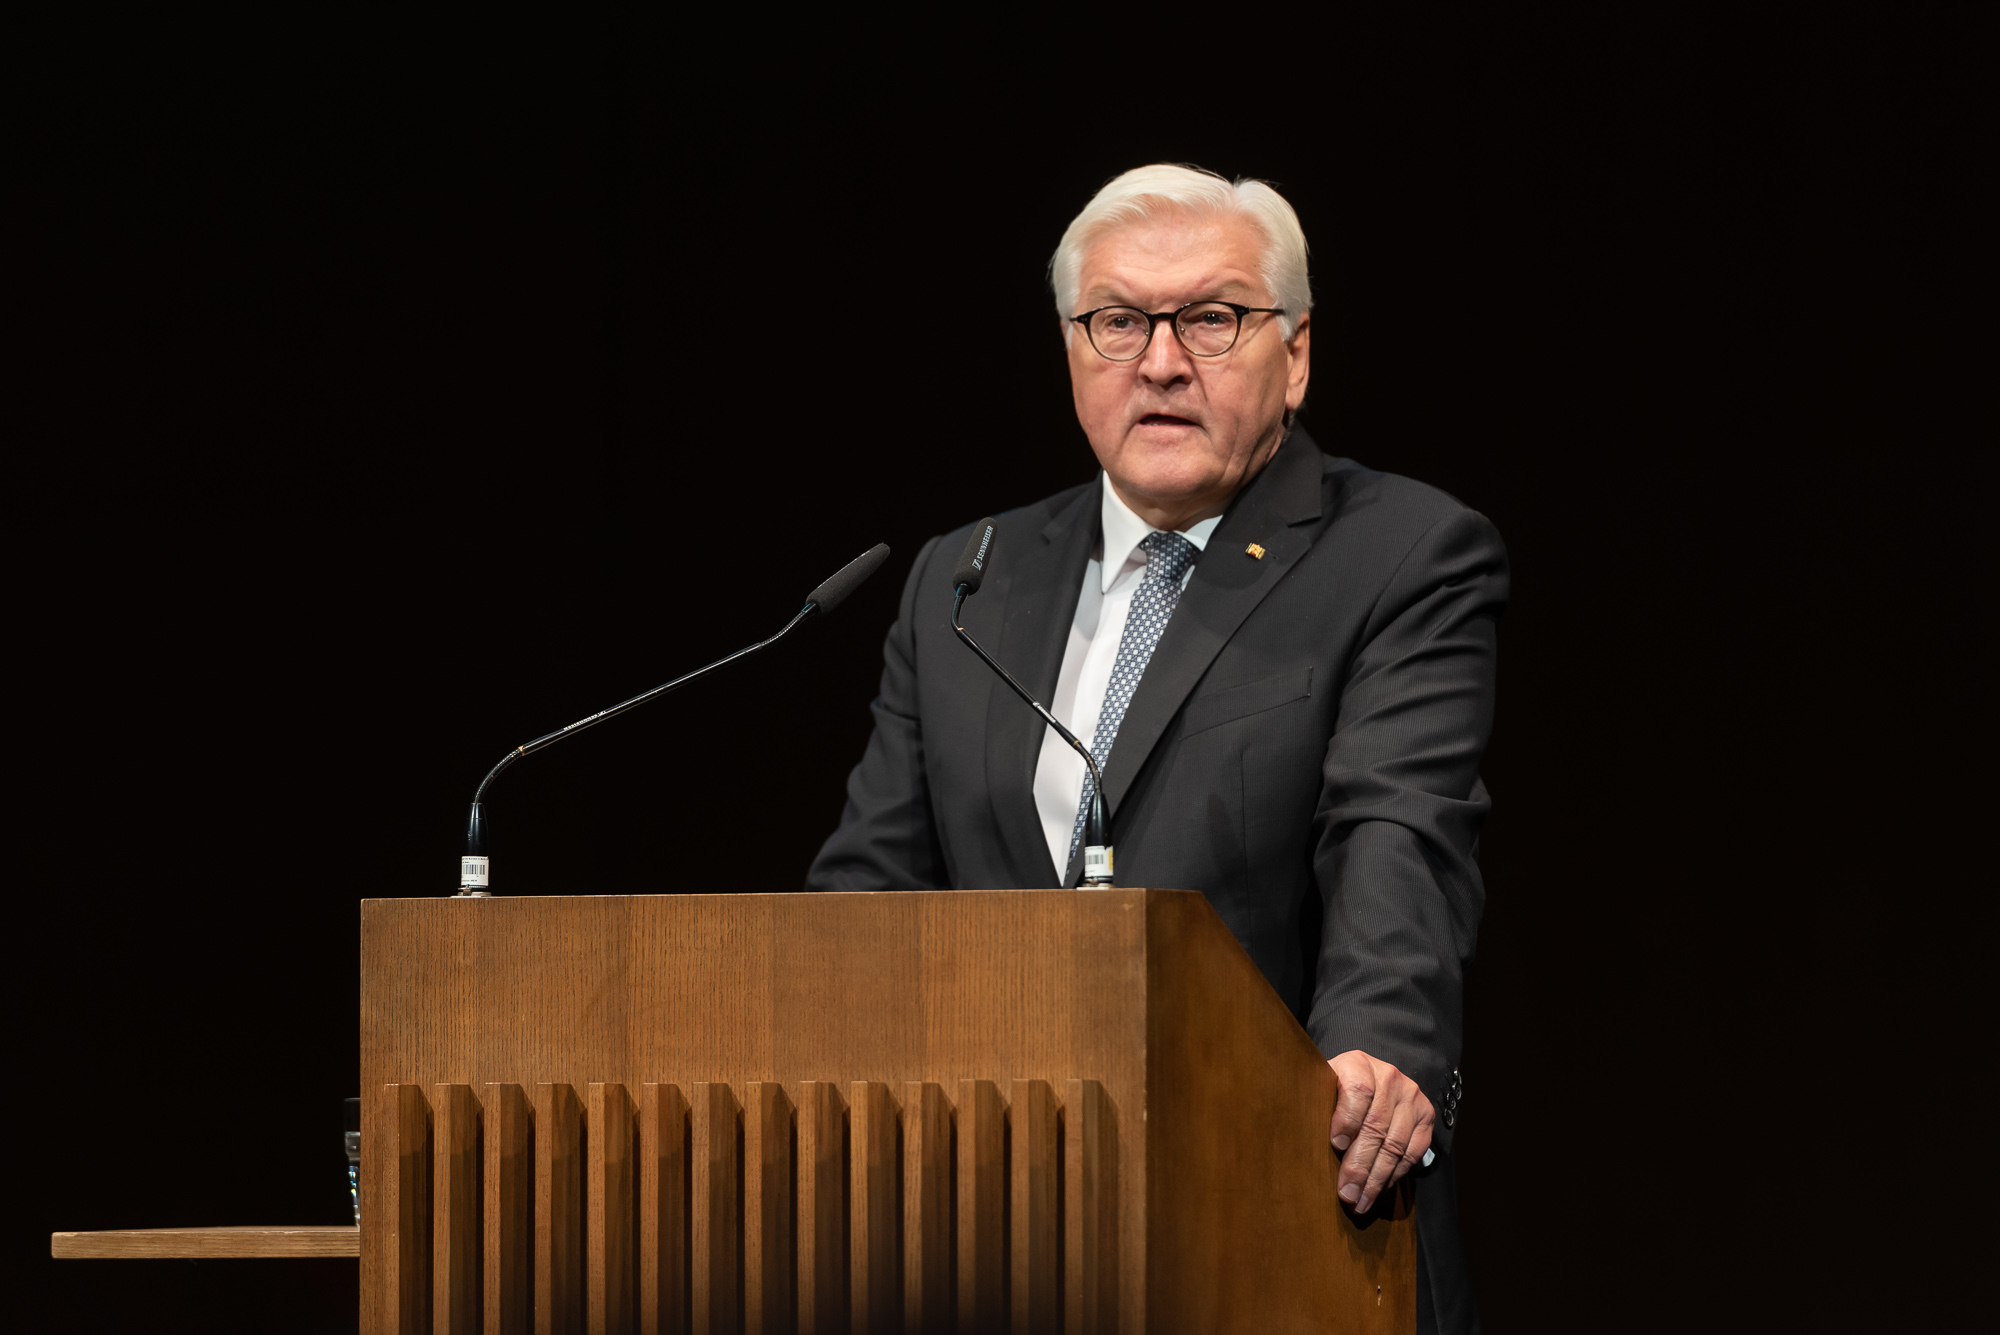 Bundespräsident Frank-Walter Steinmeier hielt eine bewegende Rede und würdigte die Generation der "Gastarbeiter". Foto: Andreas Schwarz